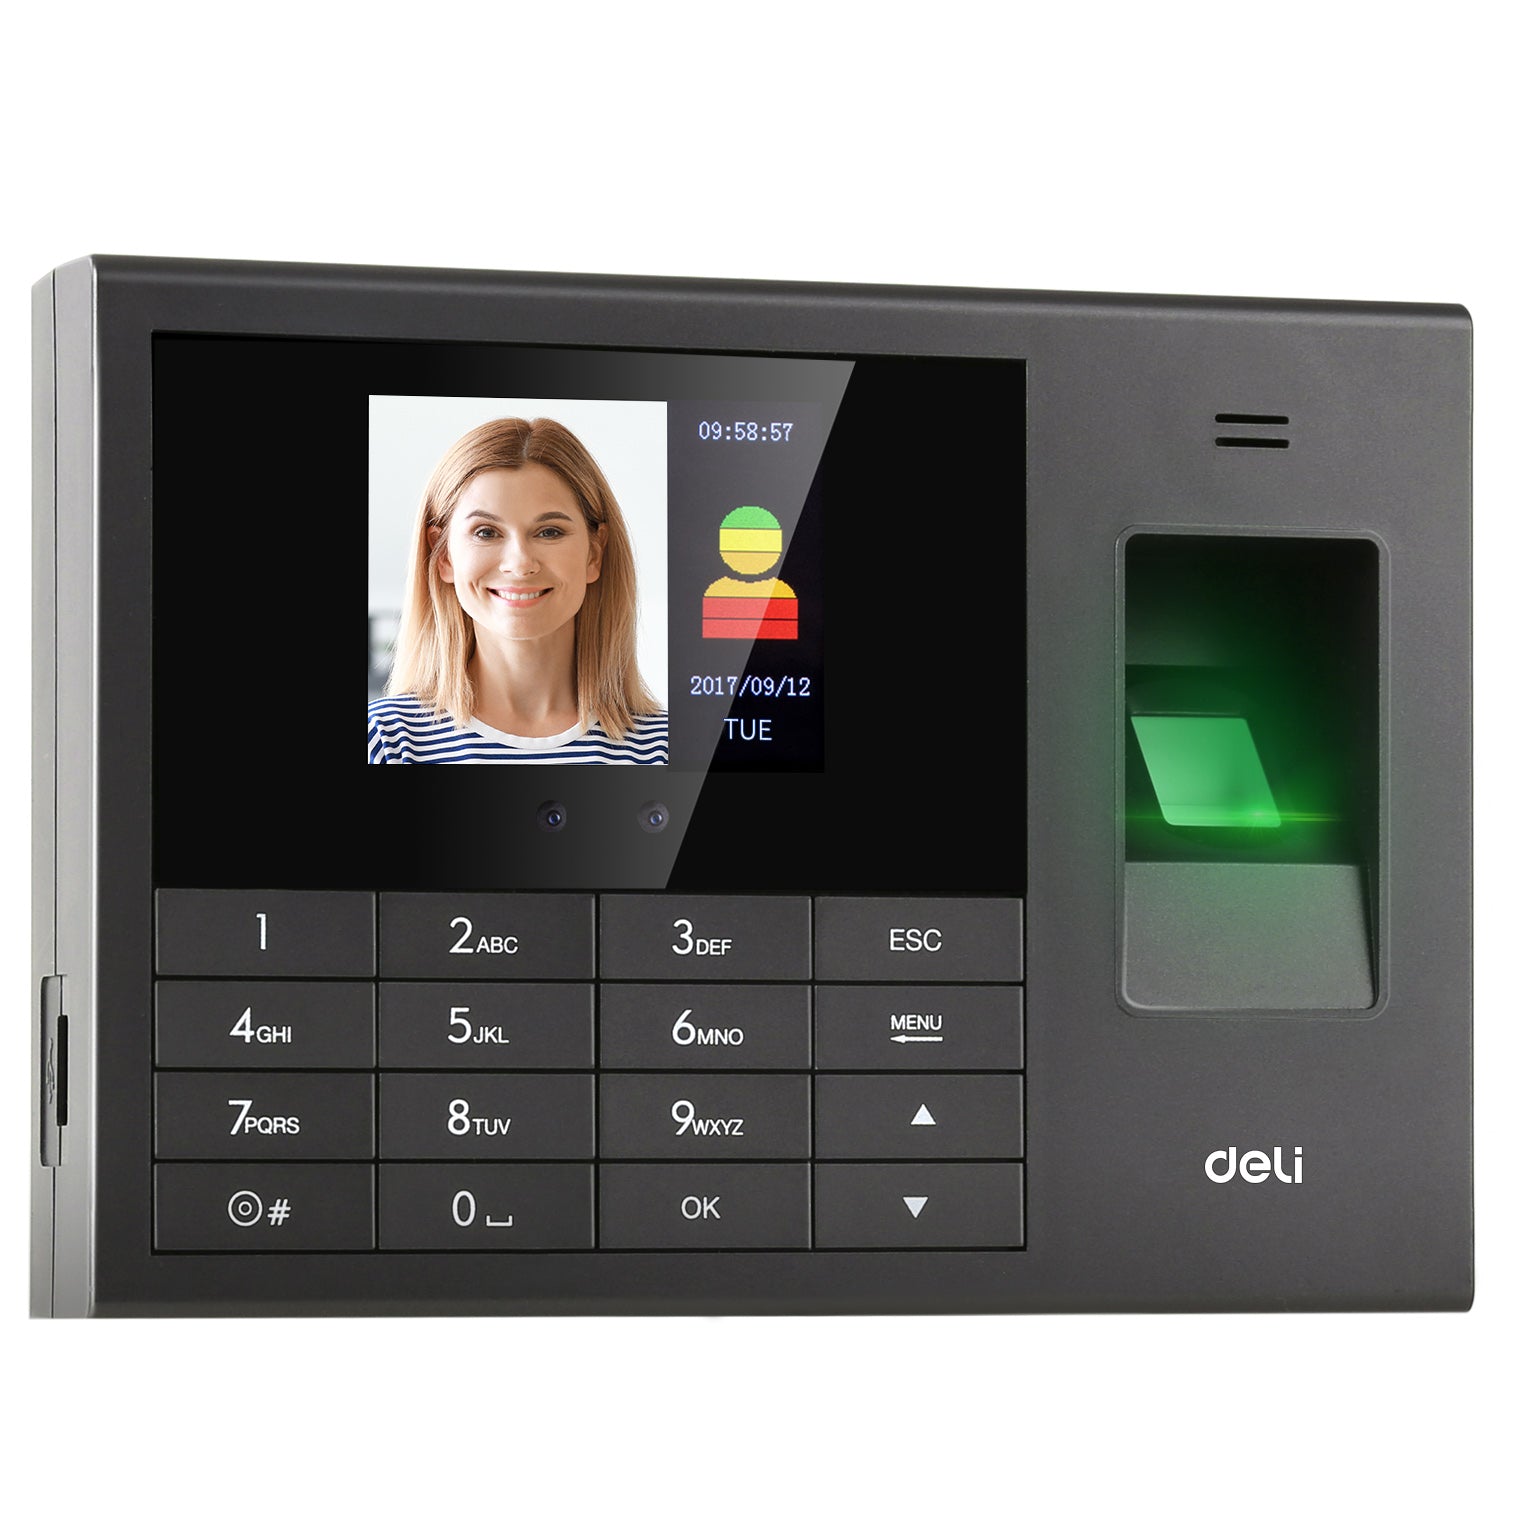 DELI E3765 Fingerprint Reader Face Recognition machine in Dar Tanzania